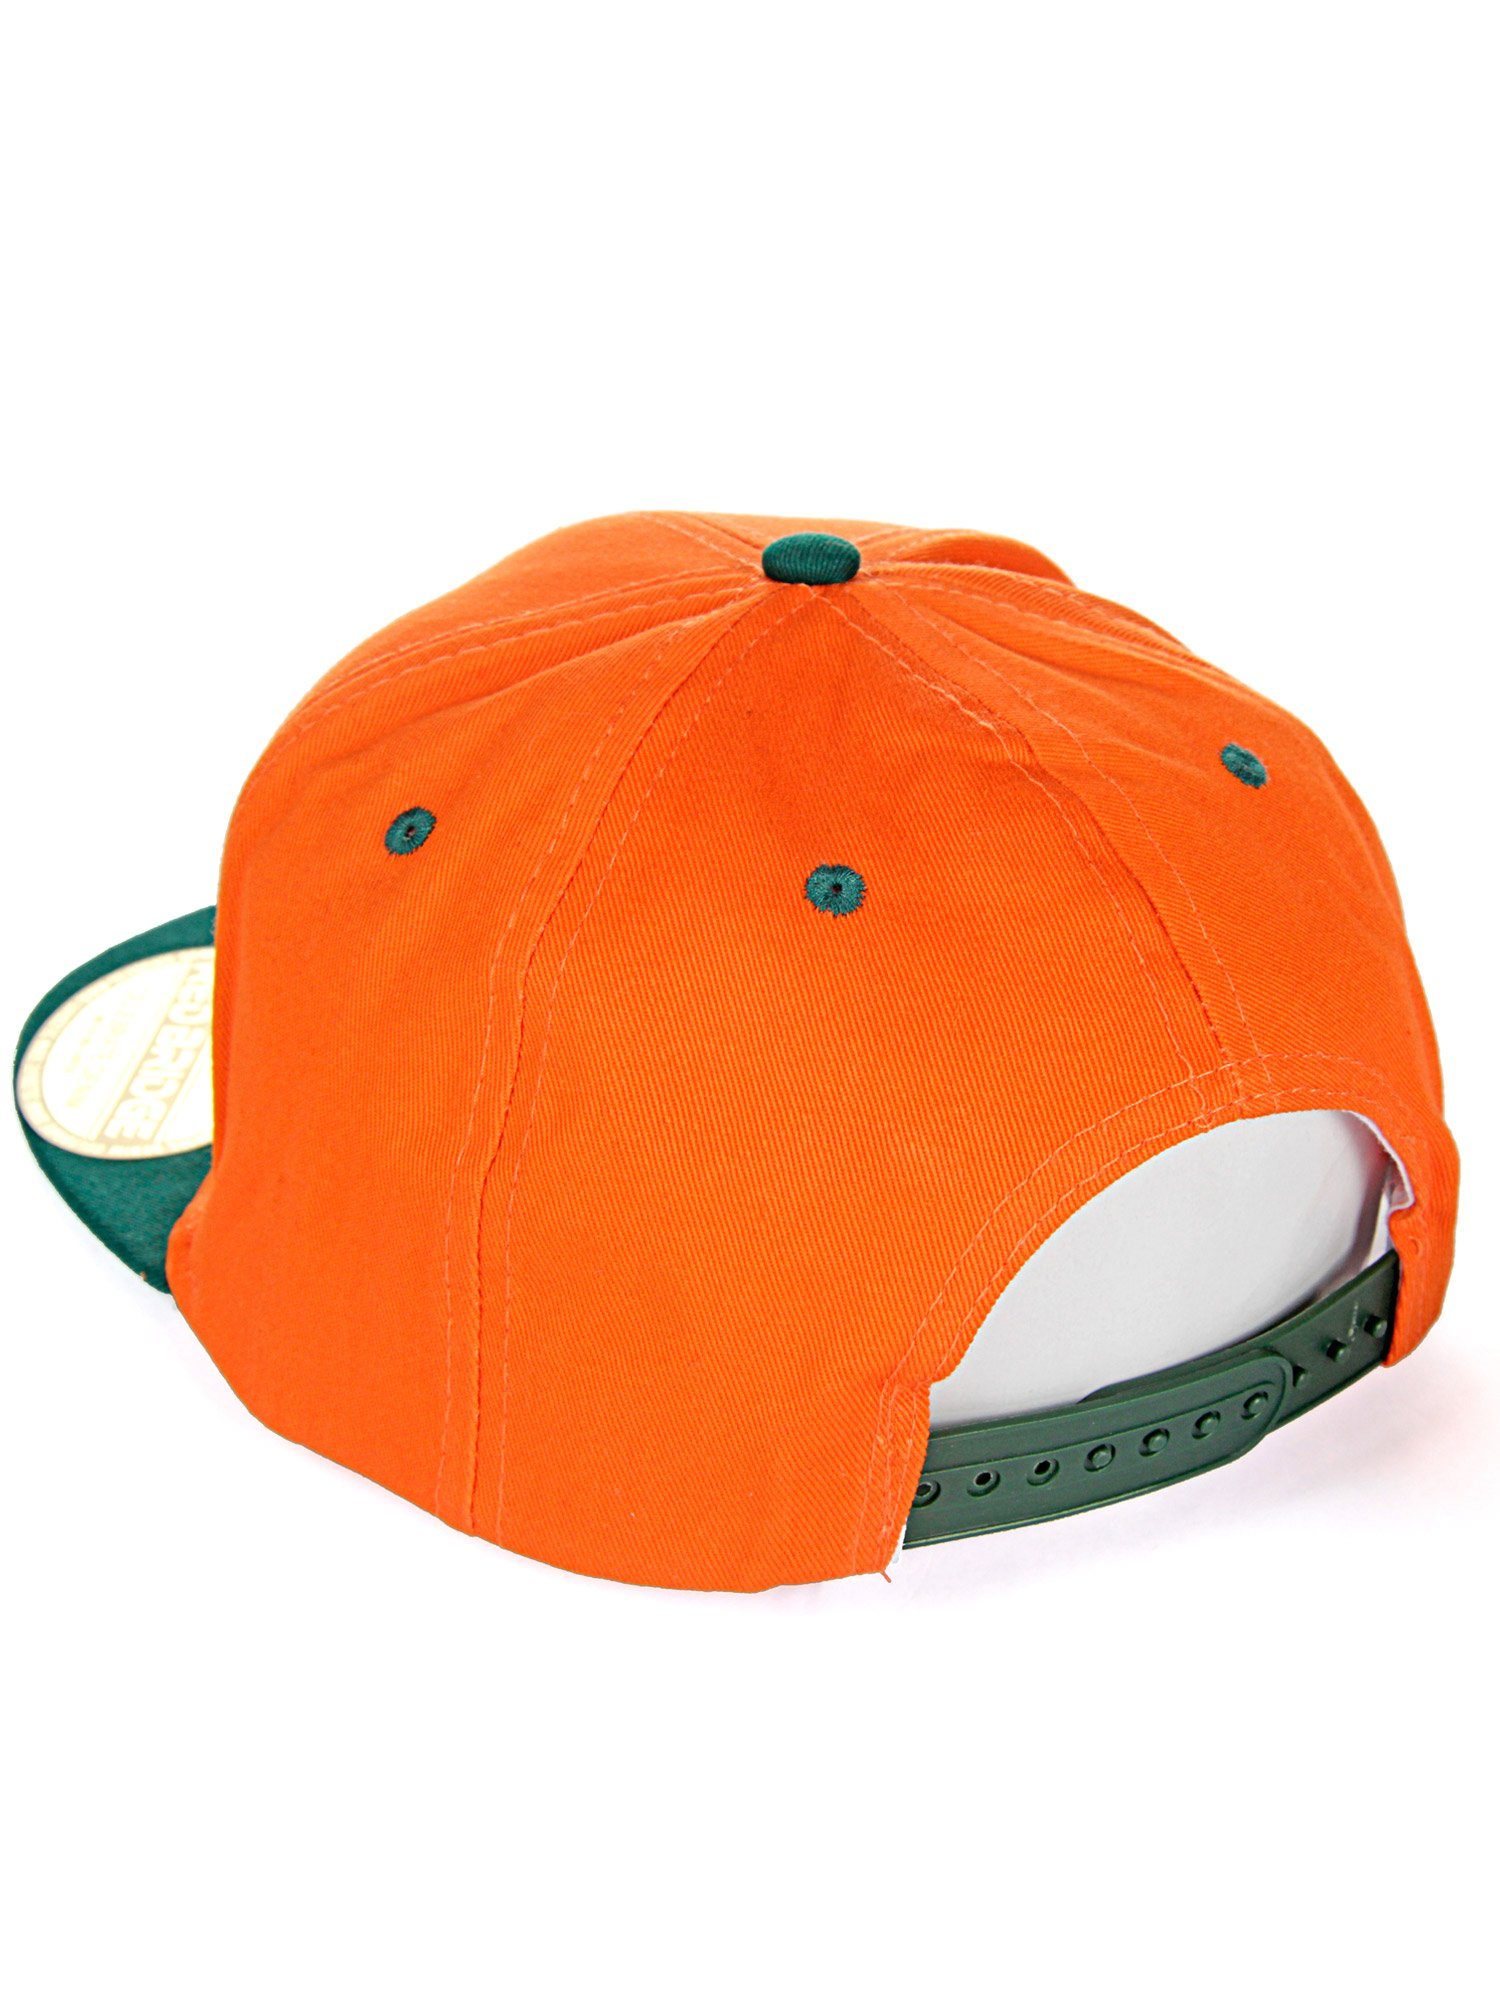 RedBridge Baseball Cap Wellingborough mit orange-grün Druckverschluss